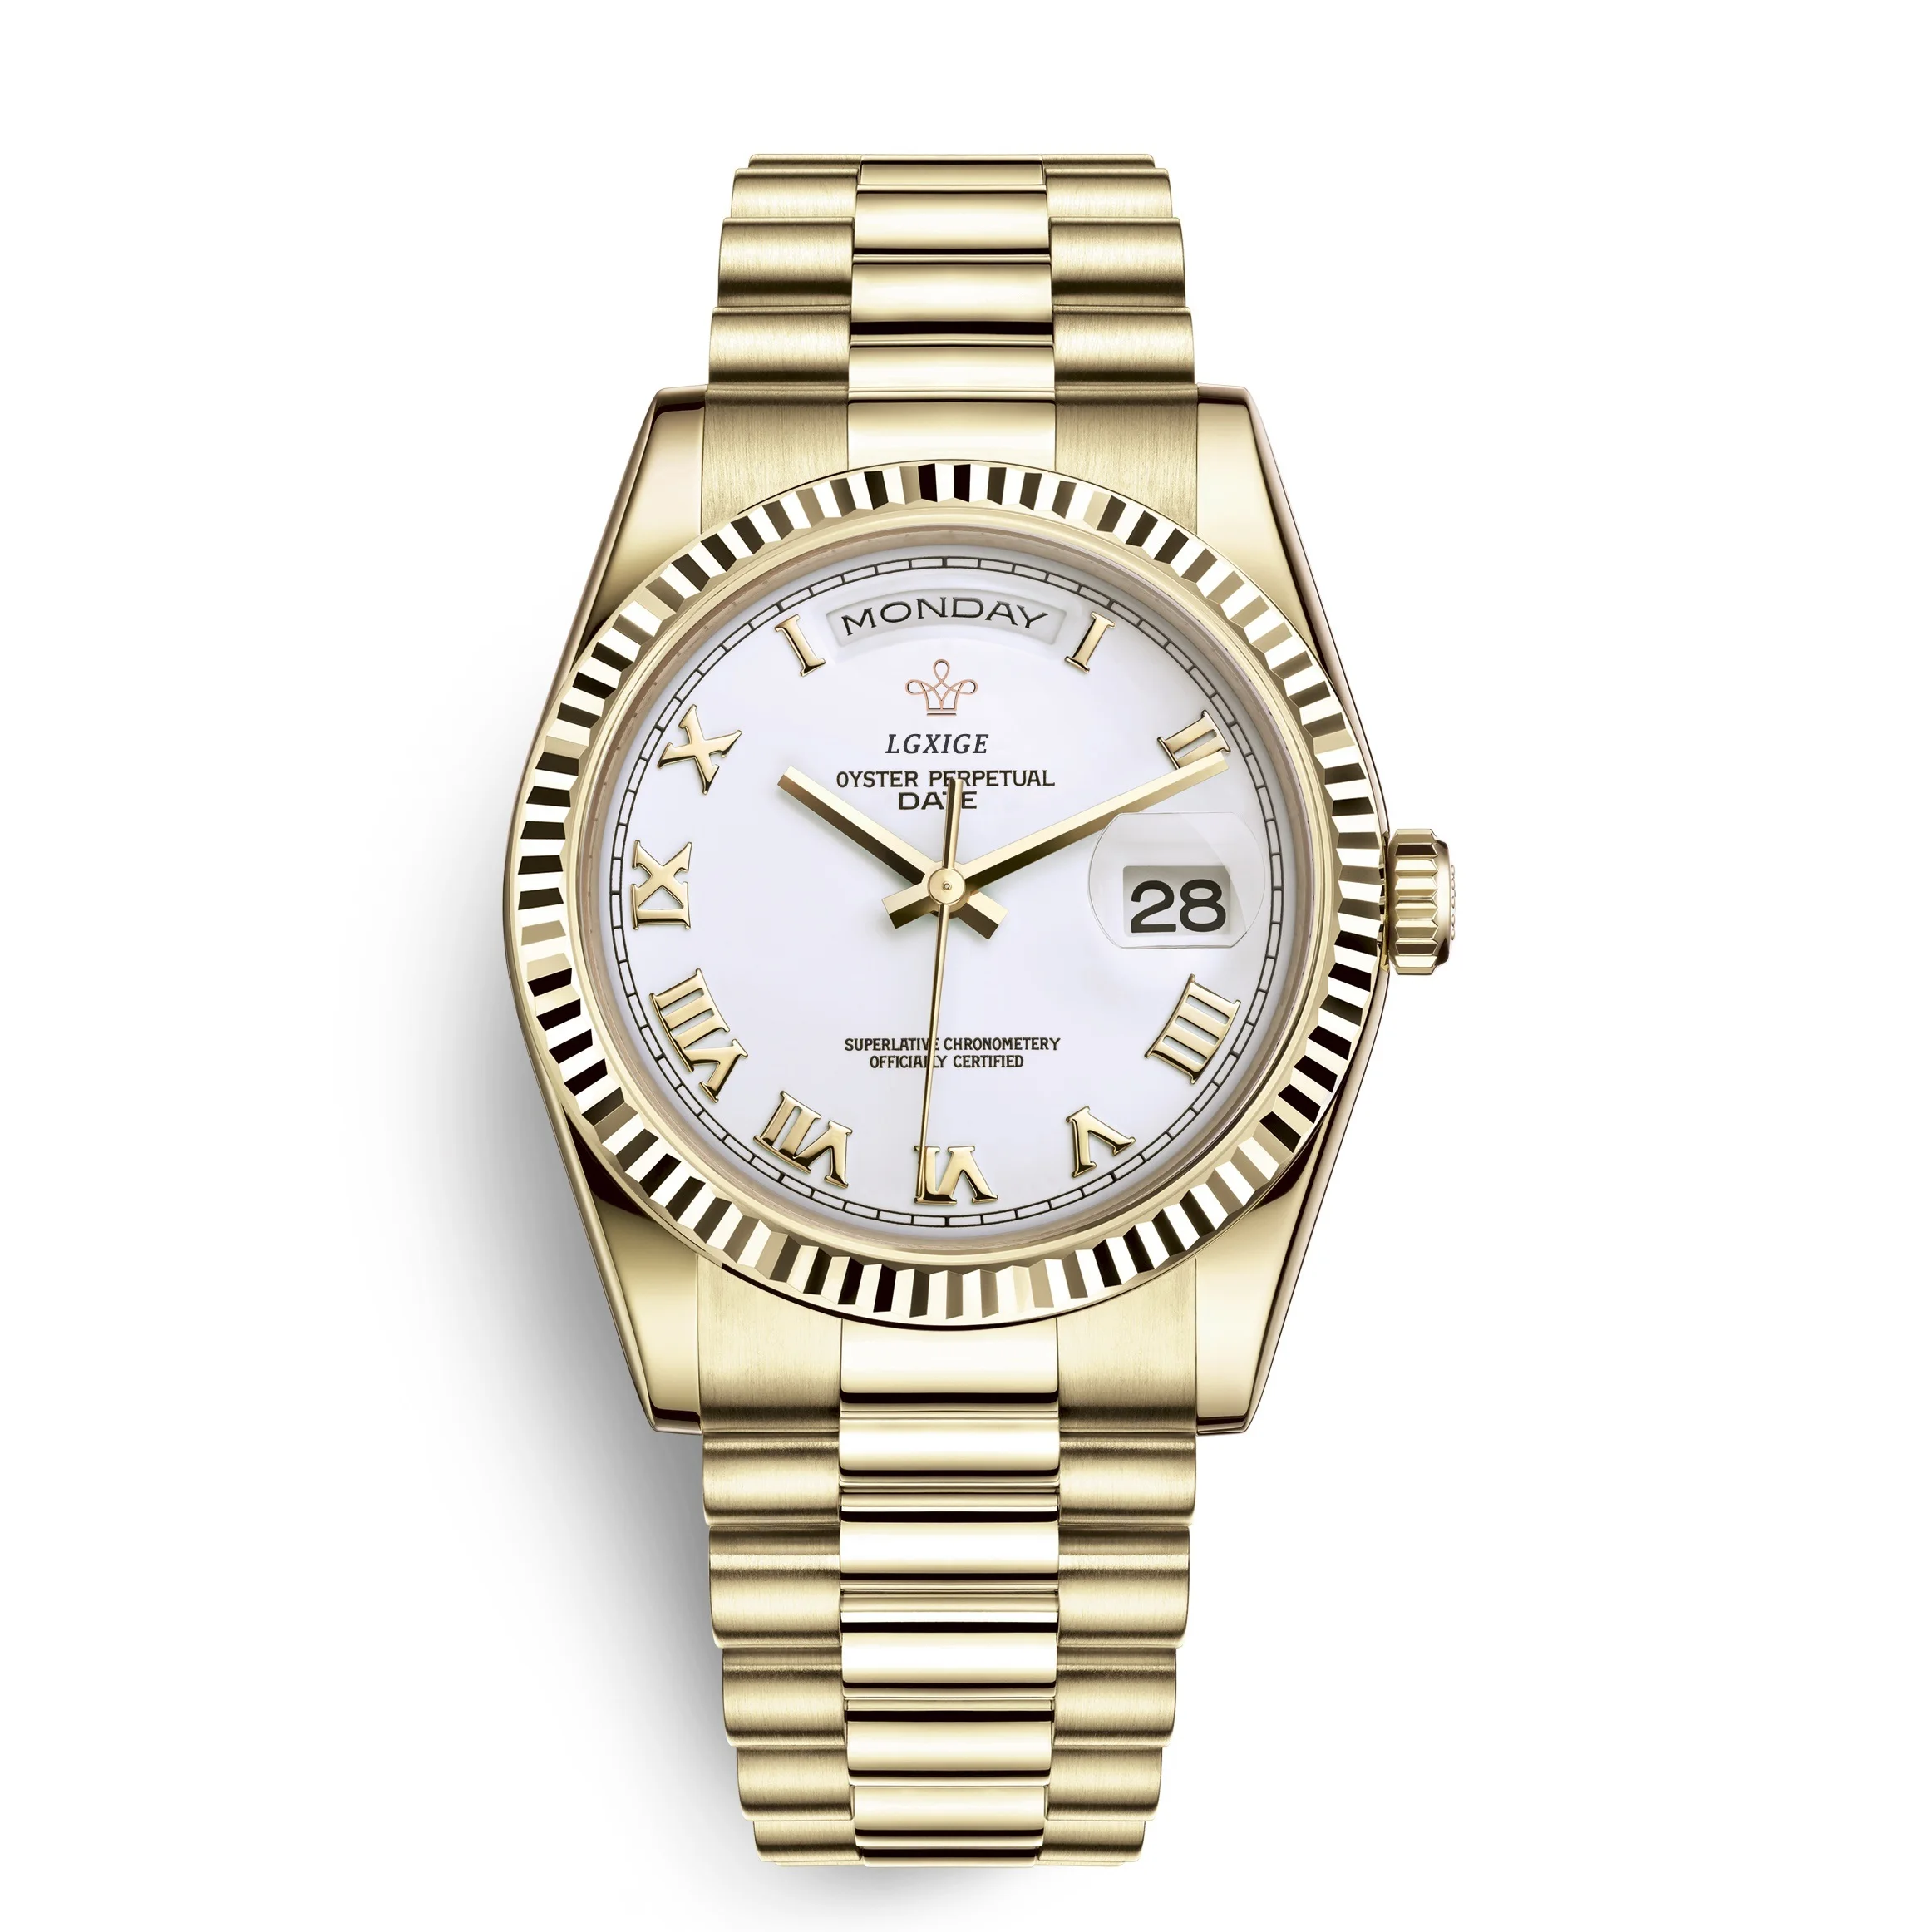 LGXIGE новые мужские часы с двойным календарем, блестящие водонепроницаемые повседневные модные часы из нержавеющей стали, часы AAA reloj hombre